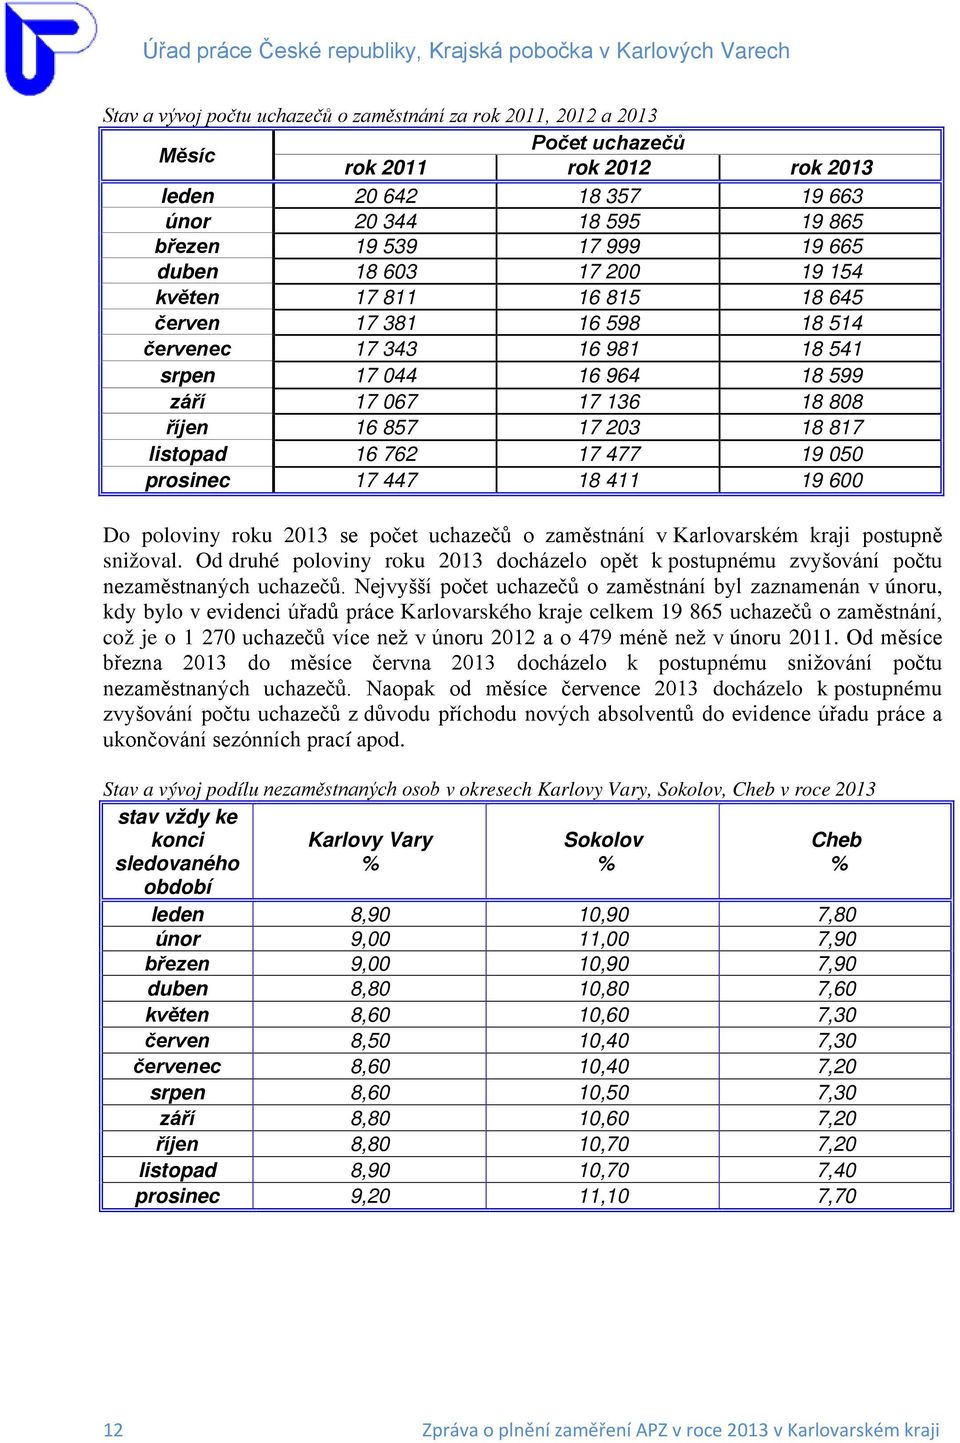 listopad 16 762 17 477 19 050 prosinec 17 447 18 411 19 600 Do poloviny roku 2013 se počet uchazečů o zaměstnání v Karlovarském kraji postupně snižoval.